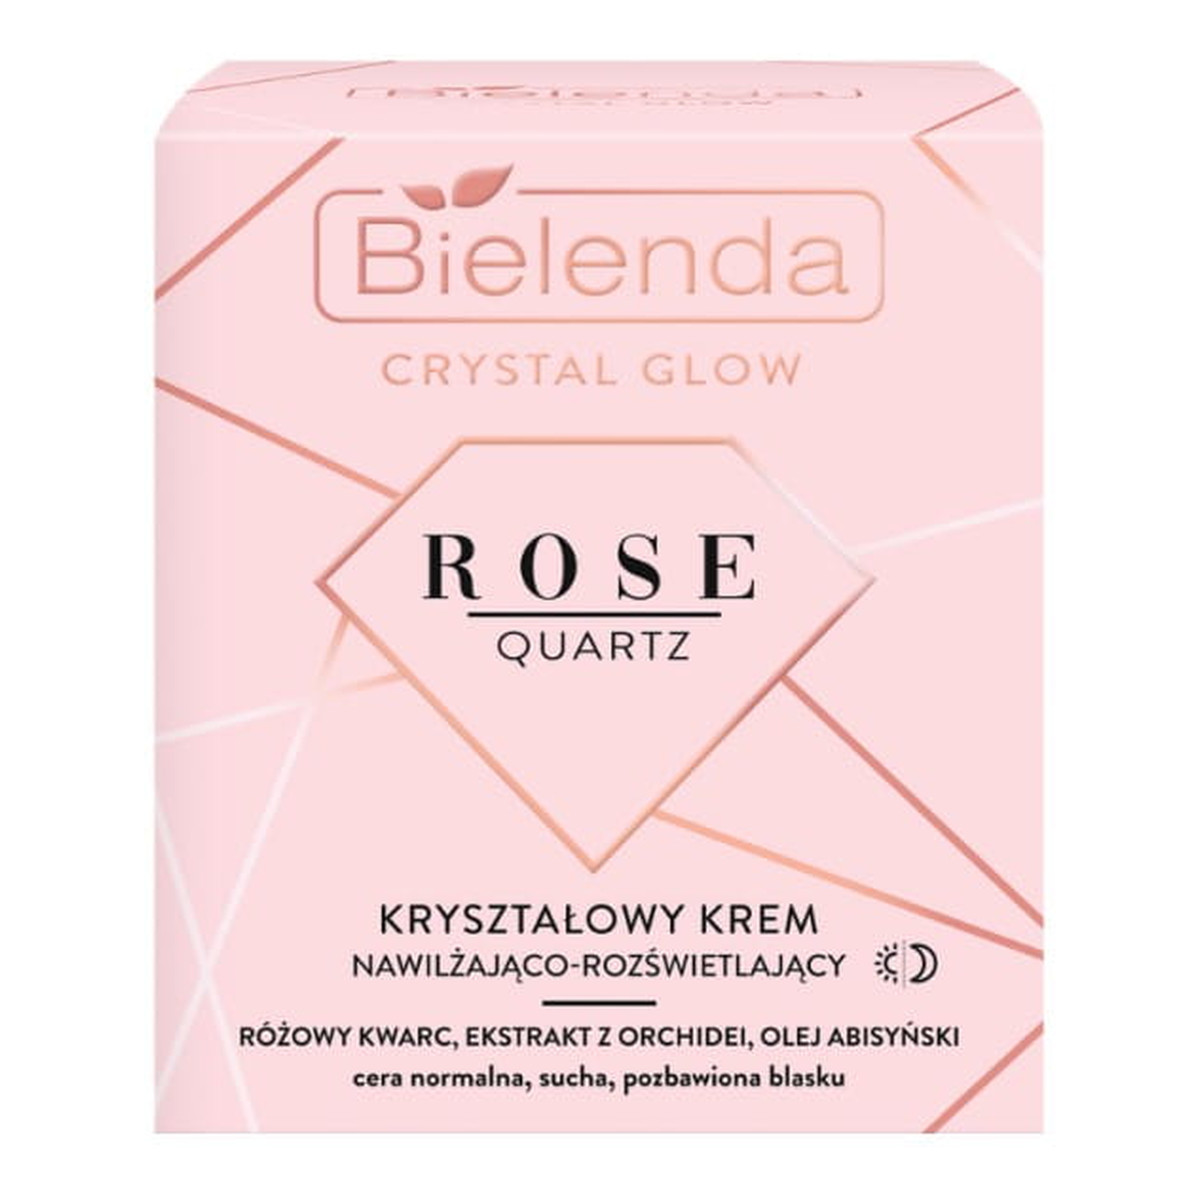 Bielenda Crystal Glow Rose Quartz Kryształowy Krem nawilżająco - rozświetlający na dzień i noc 50ml